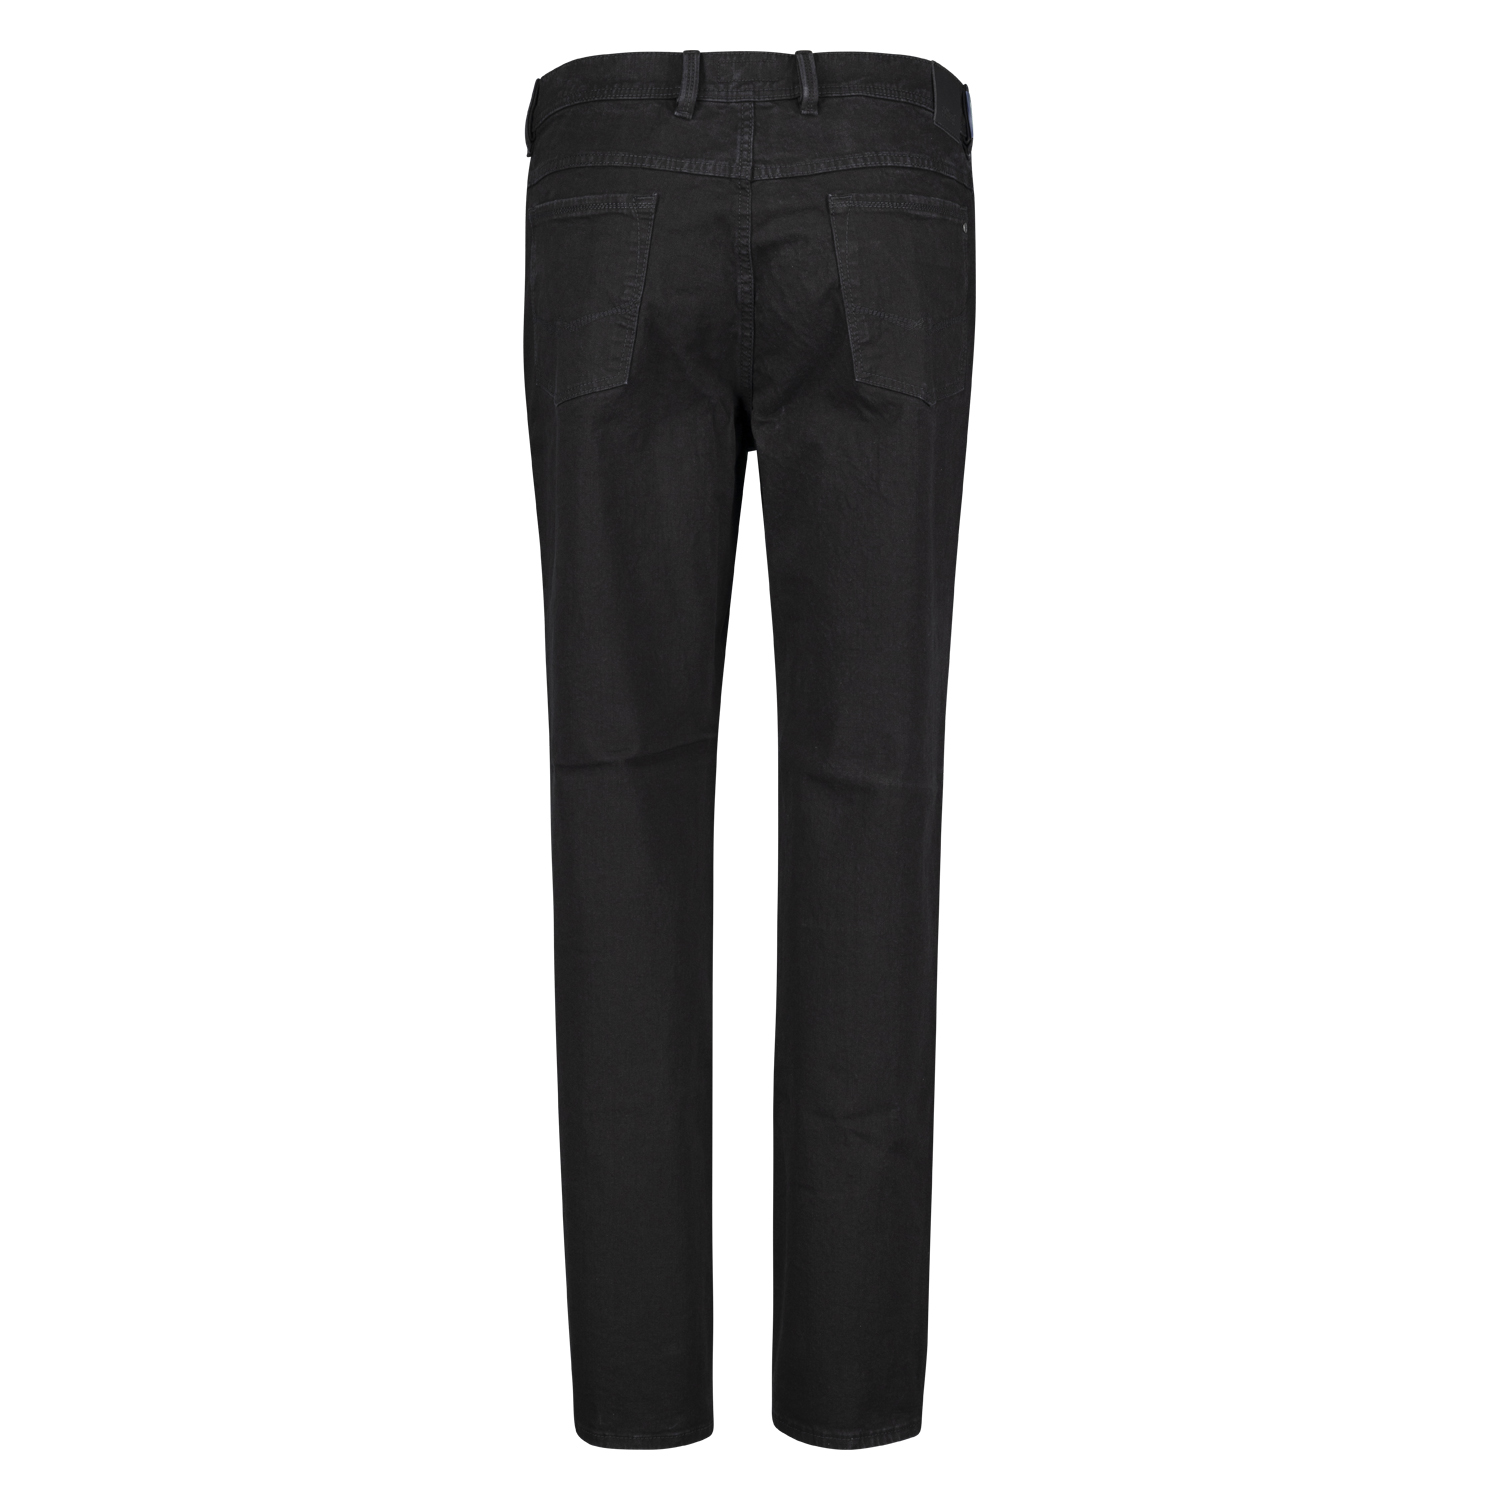 Herren Five Pocket Jeans untersetzte Größen schwarz Modell "Peter" von Pioneer in 28 - 40